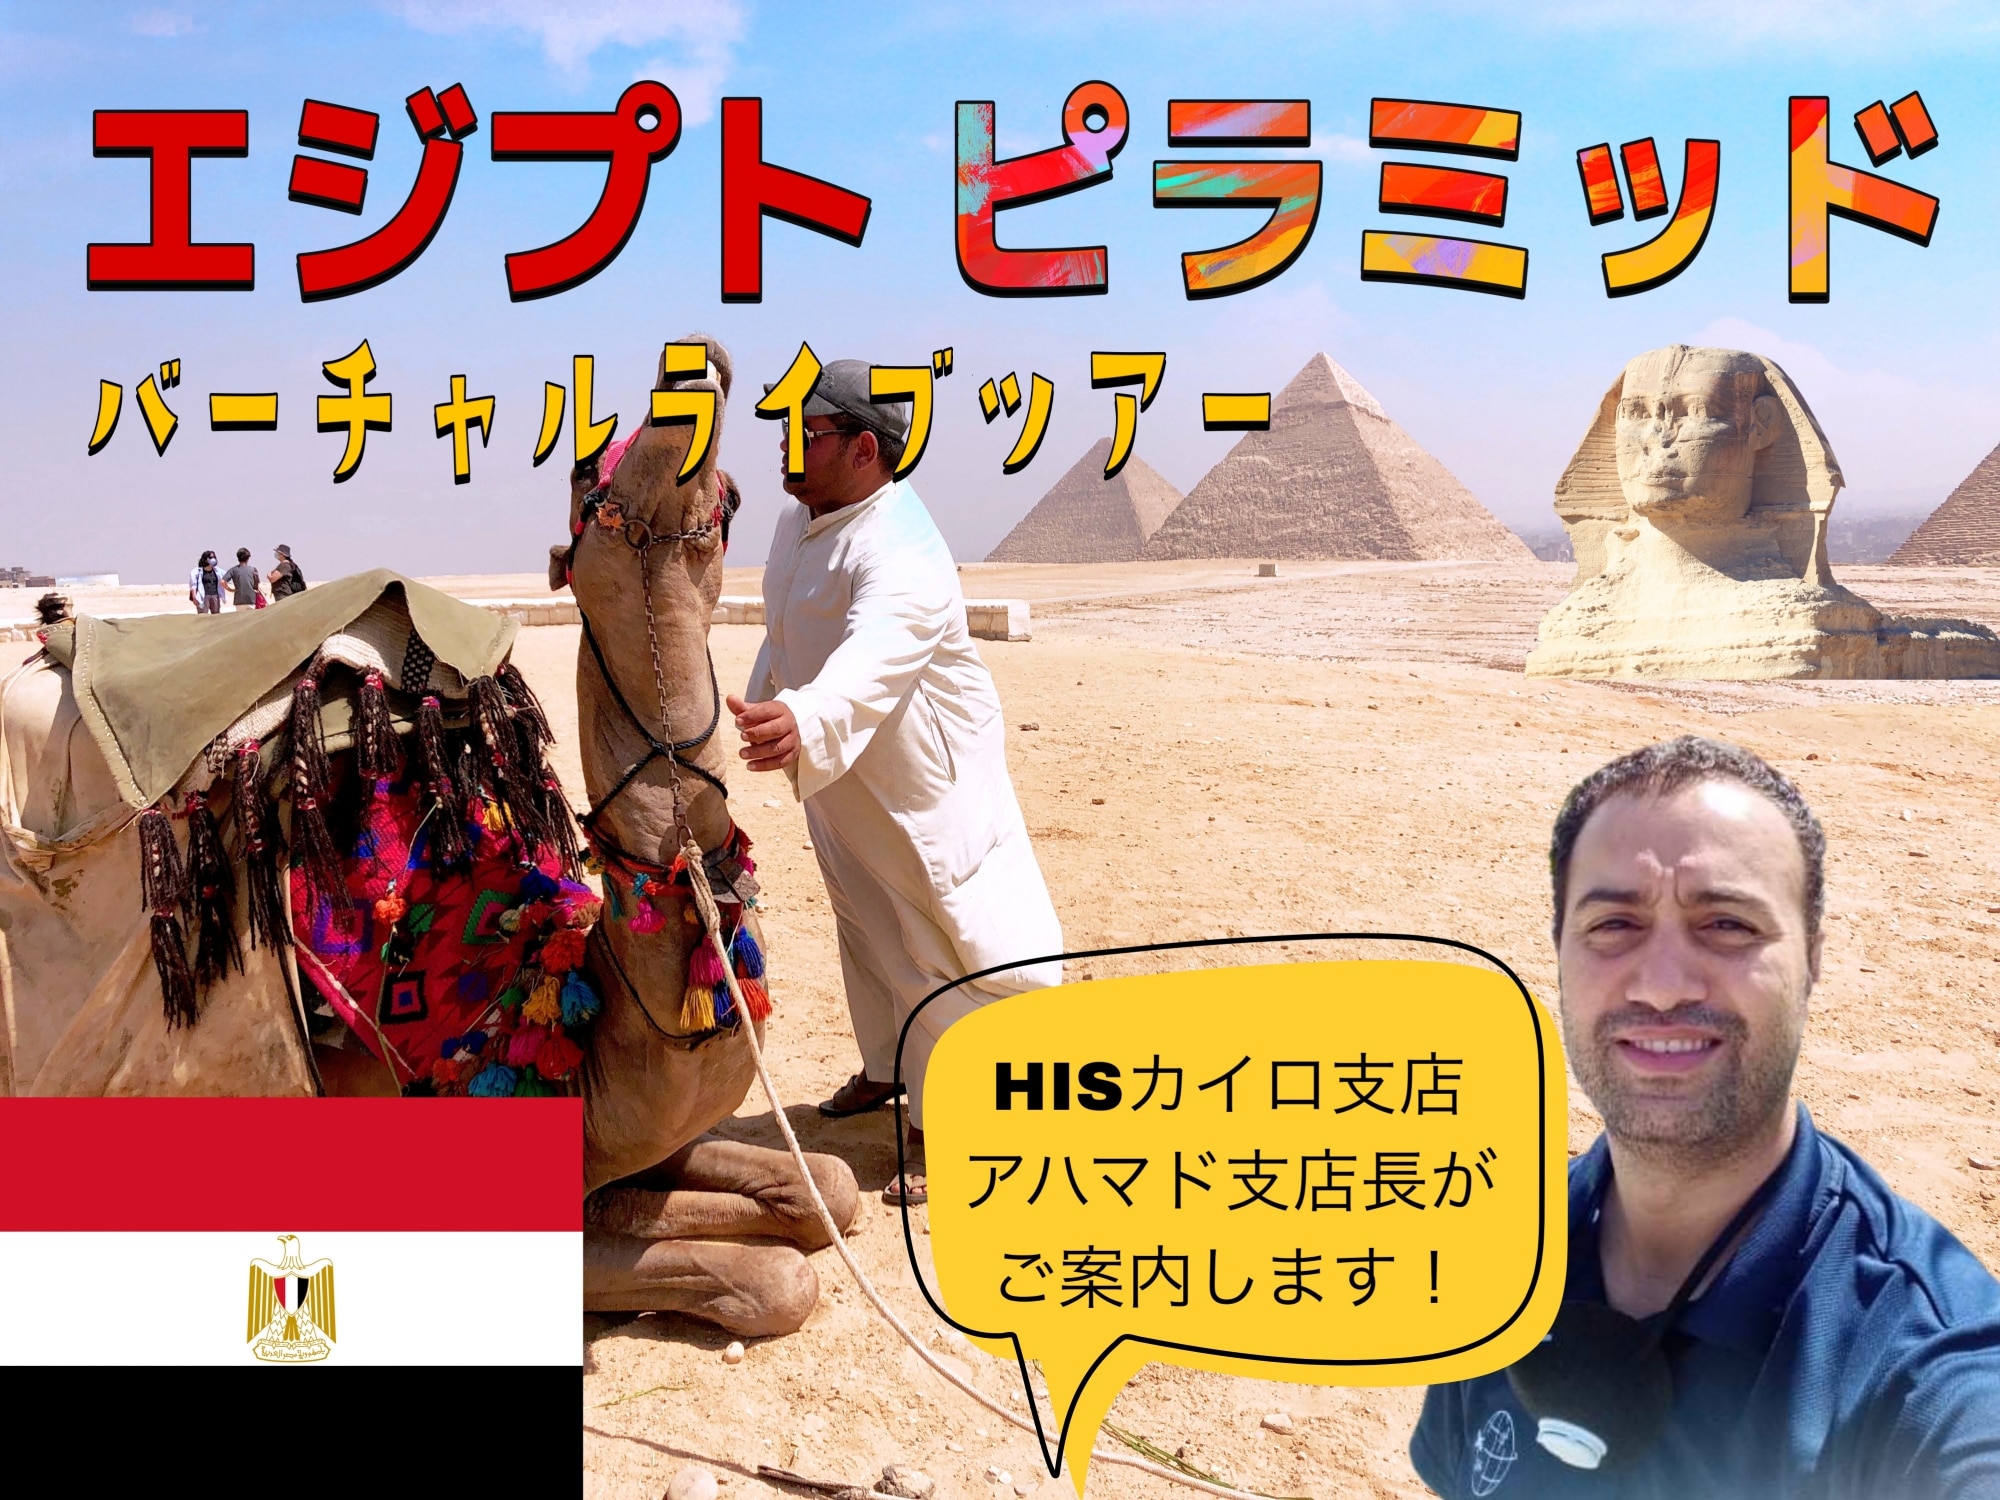 H I S オンライン体験 世界遺産エジプト ギザのピラミッドとスフィンクス ライブツアー カイロ エジプト のオプショナルツアー 海外現地ツアー格安予約